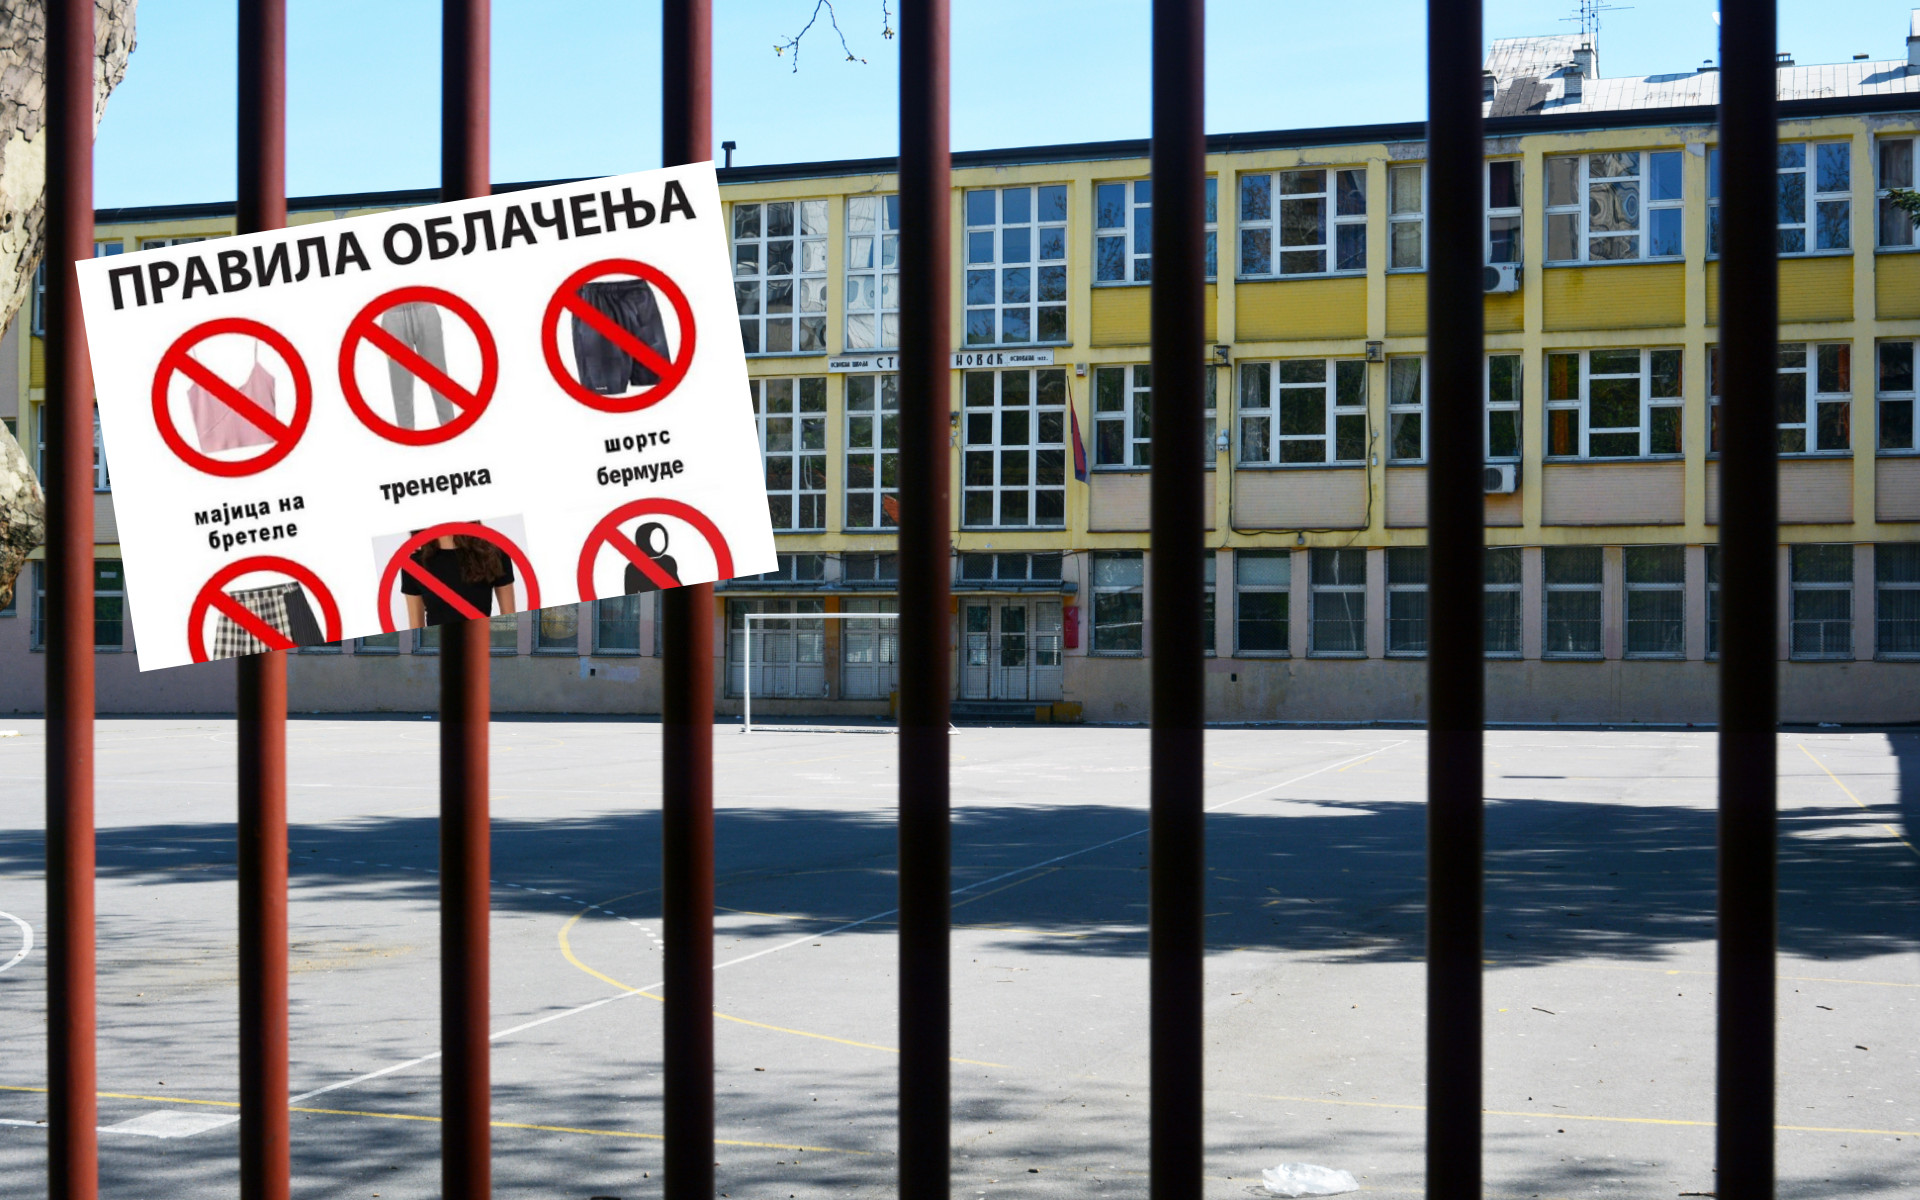 "Vaspitajte decu, umesto da ih stilizujete": Beogradska gimnazija uvela pravila oblačenja koja se mnogima nisu svidela